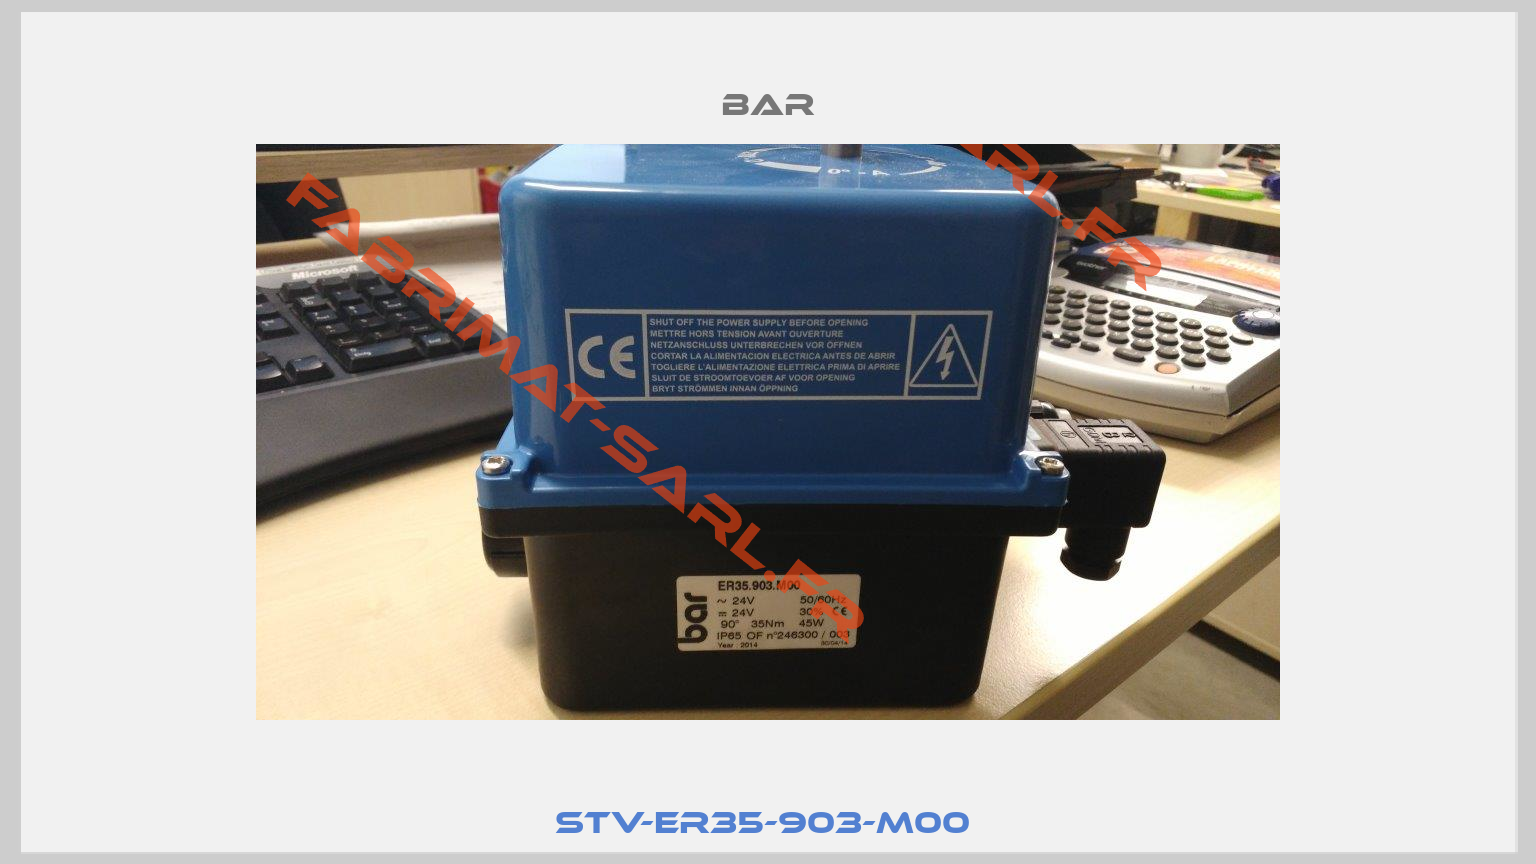 STV-ER35-903-M00 -3